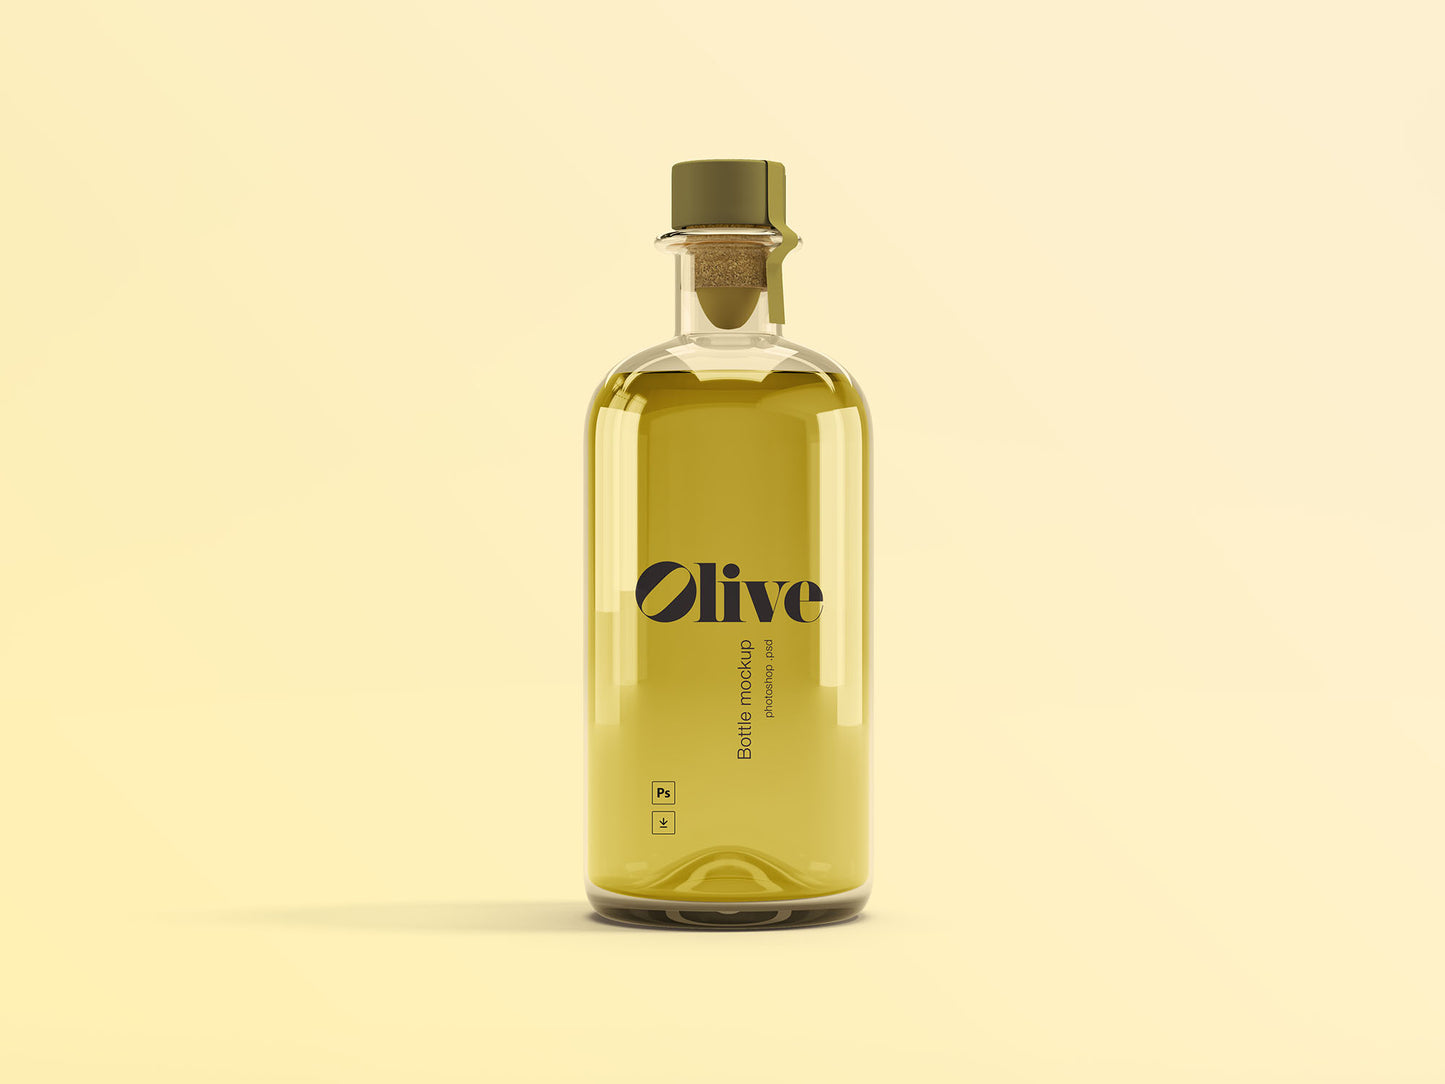 Free Olive Oil Bottle Mockup